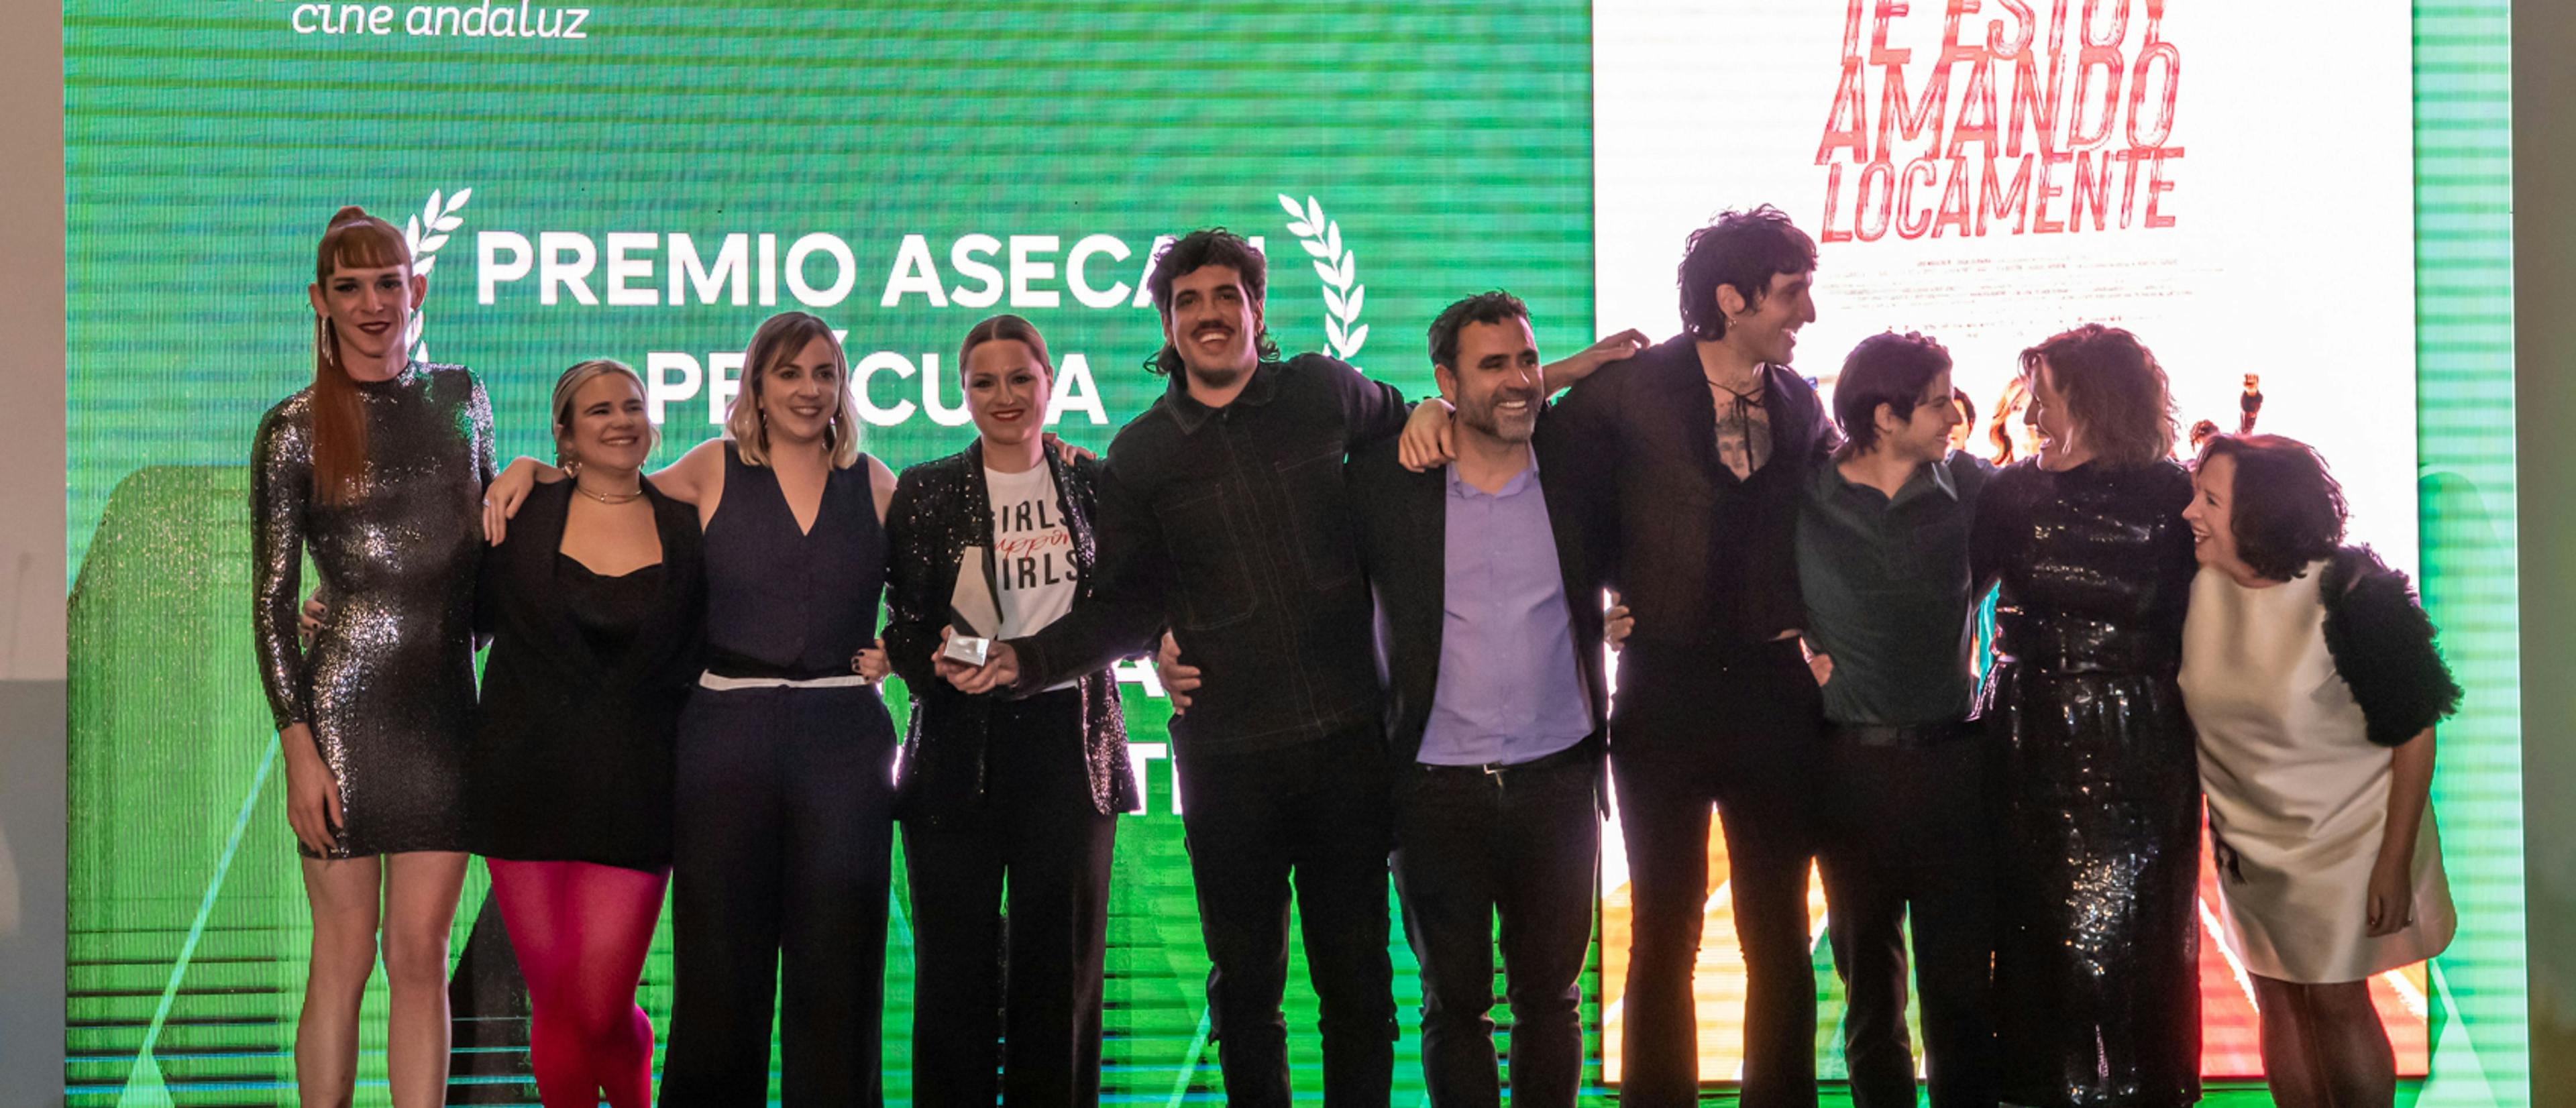 El equipo de 'Te estoy amando locamente' en la 36 edición de los Premios ASECAN